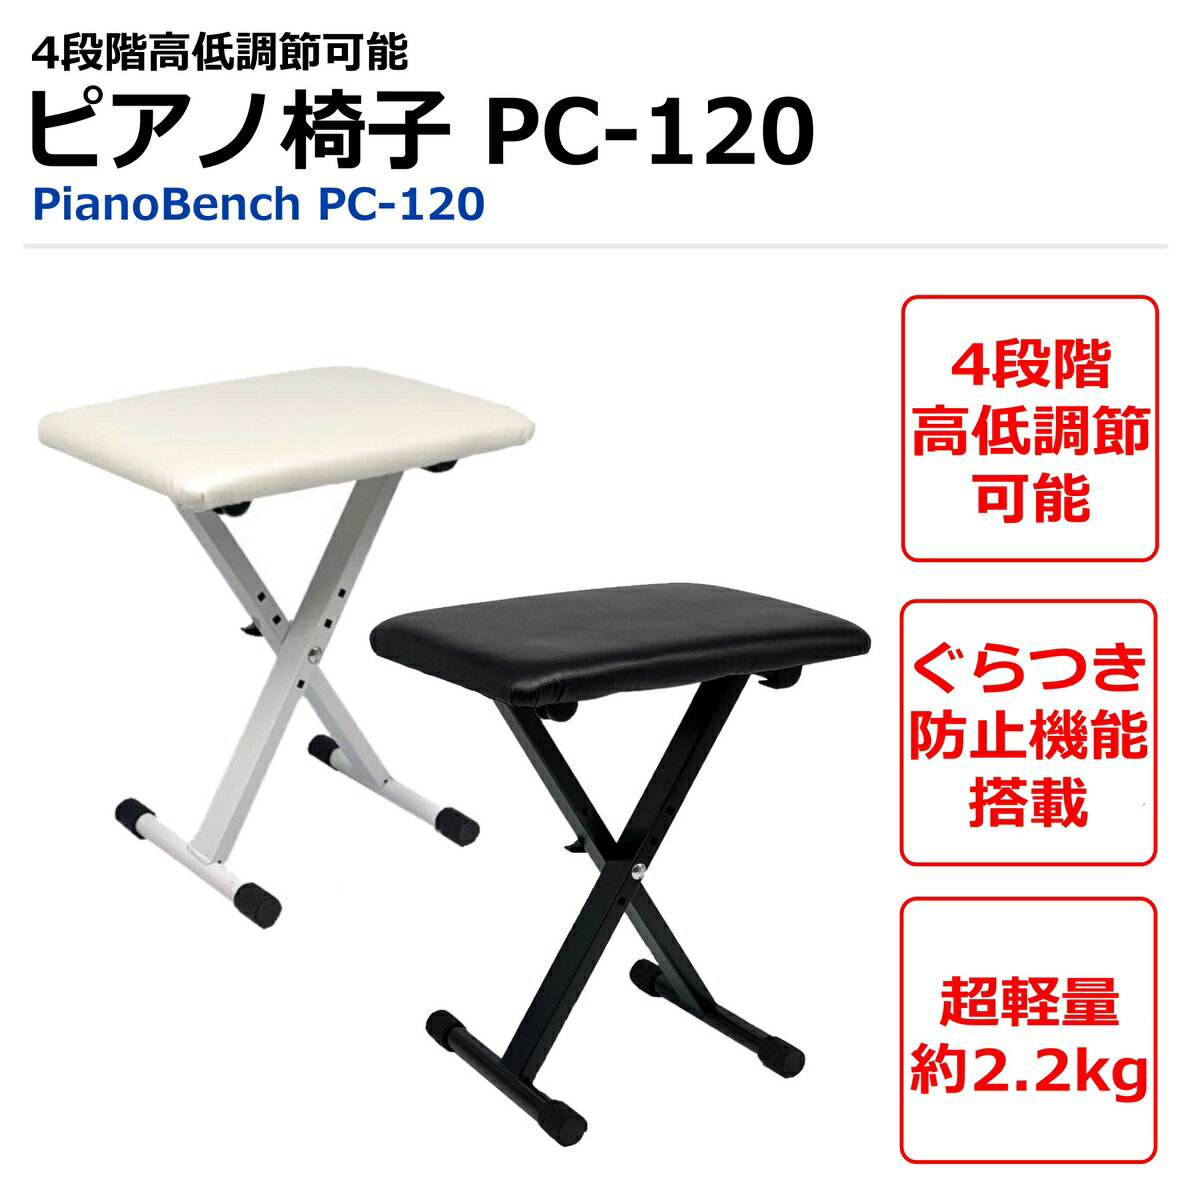 【ピアノ専門店の折り畳みピアノ椅